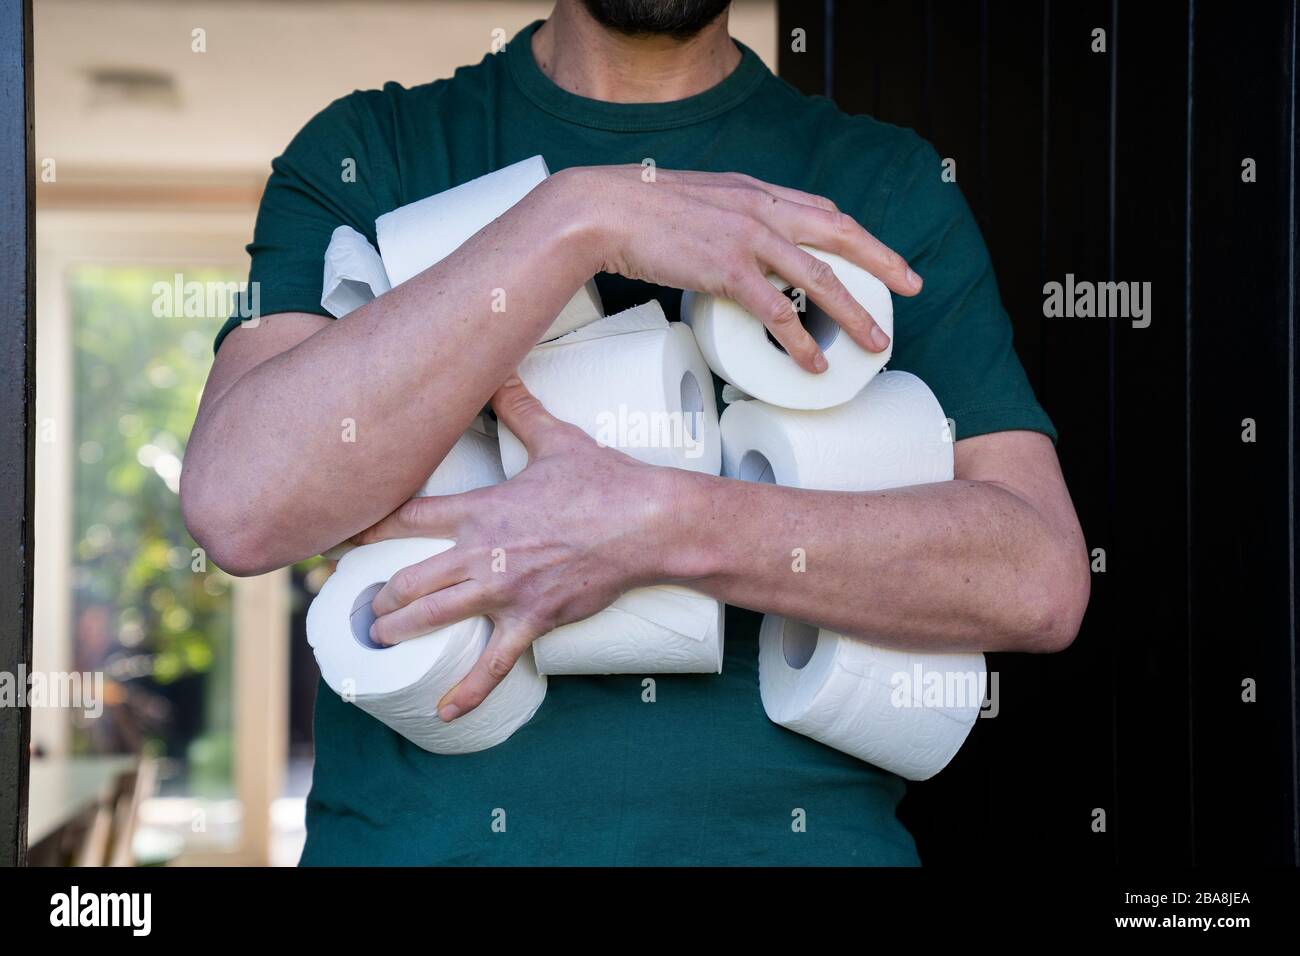 Man hoarding toilet roll during Coronavirus pandemic panic buying. Stock Photo